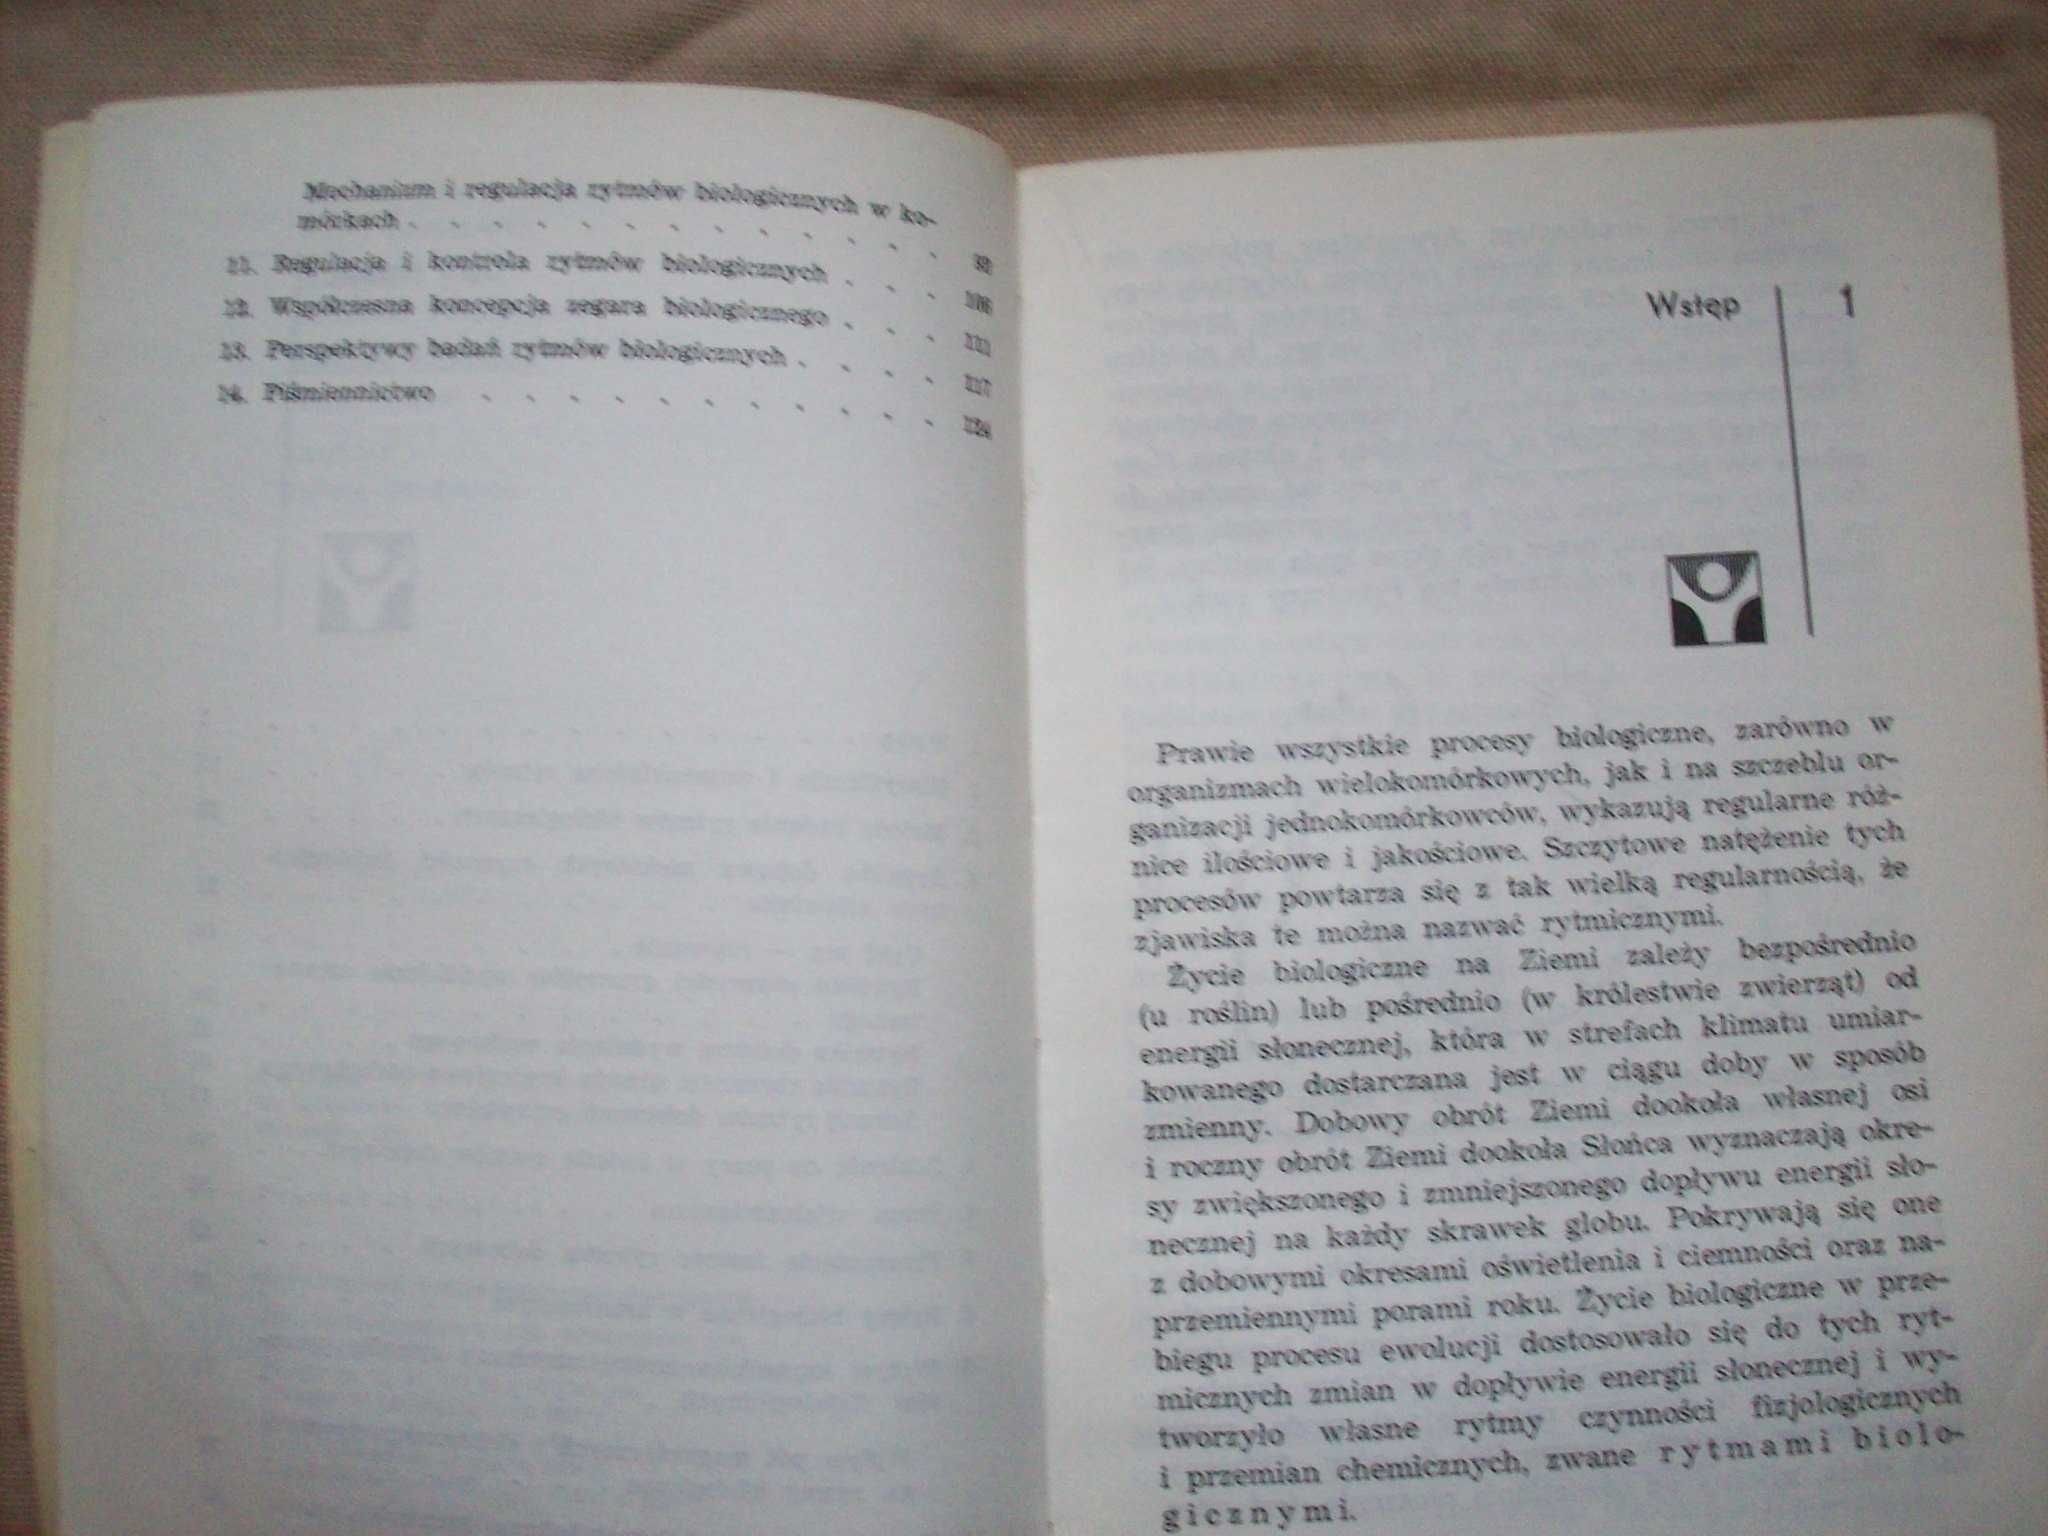 Chronobiologia, rytmy biologiczne człowieka, S.Szmigielski, 1974.